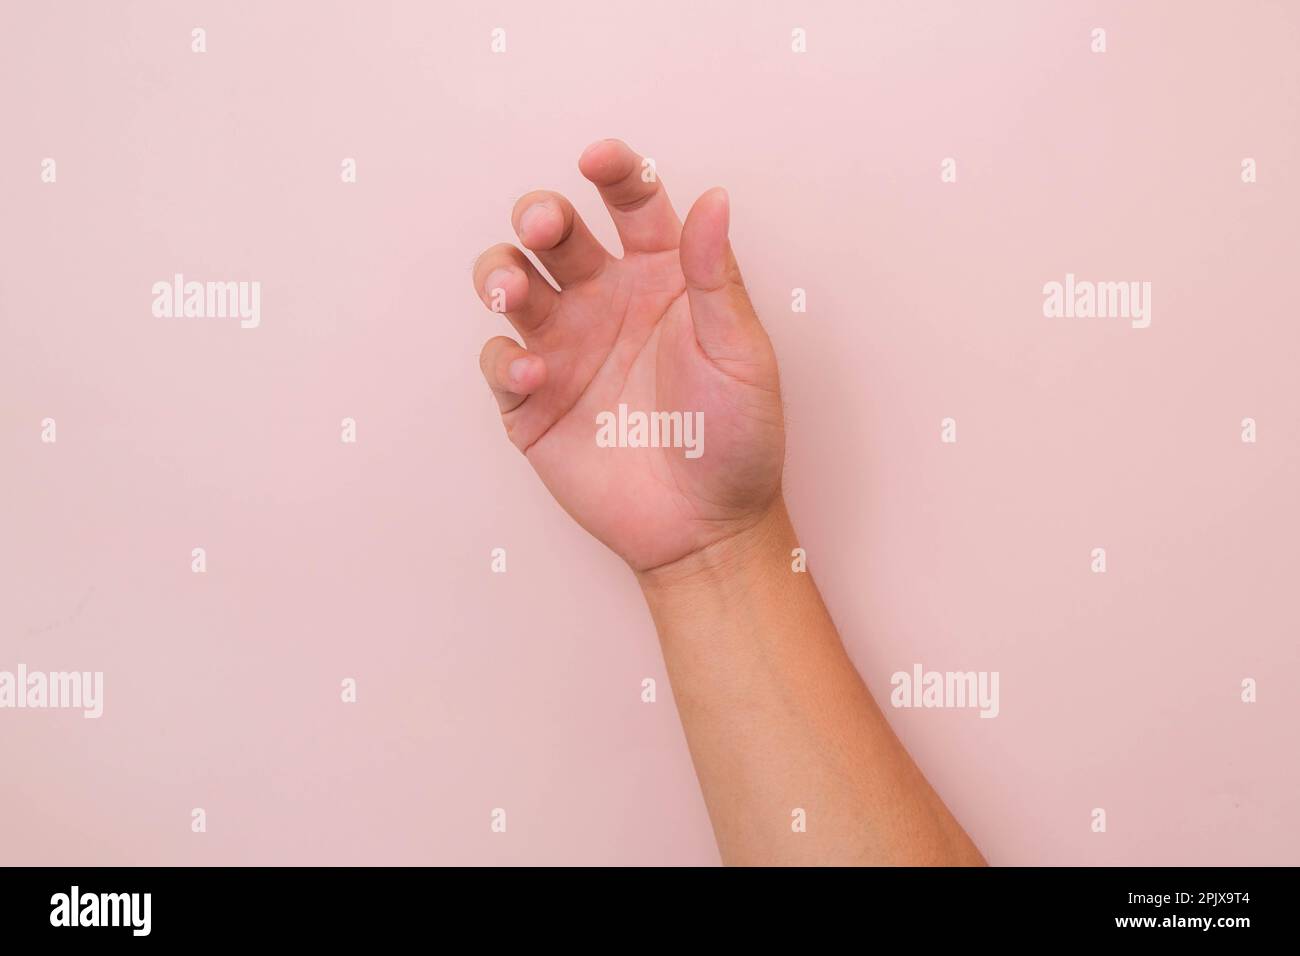 Nahaufnahme der männlichen Hand, die bereit ist, zu helfen oder zu empfangen, isoliert auf pinkfarbenem Hintergrund. Helfende Hand zur Rettung ausgestreckt. Stockfoto